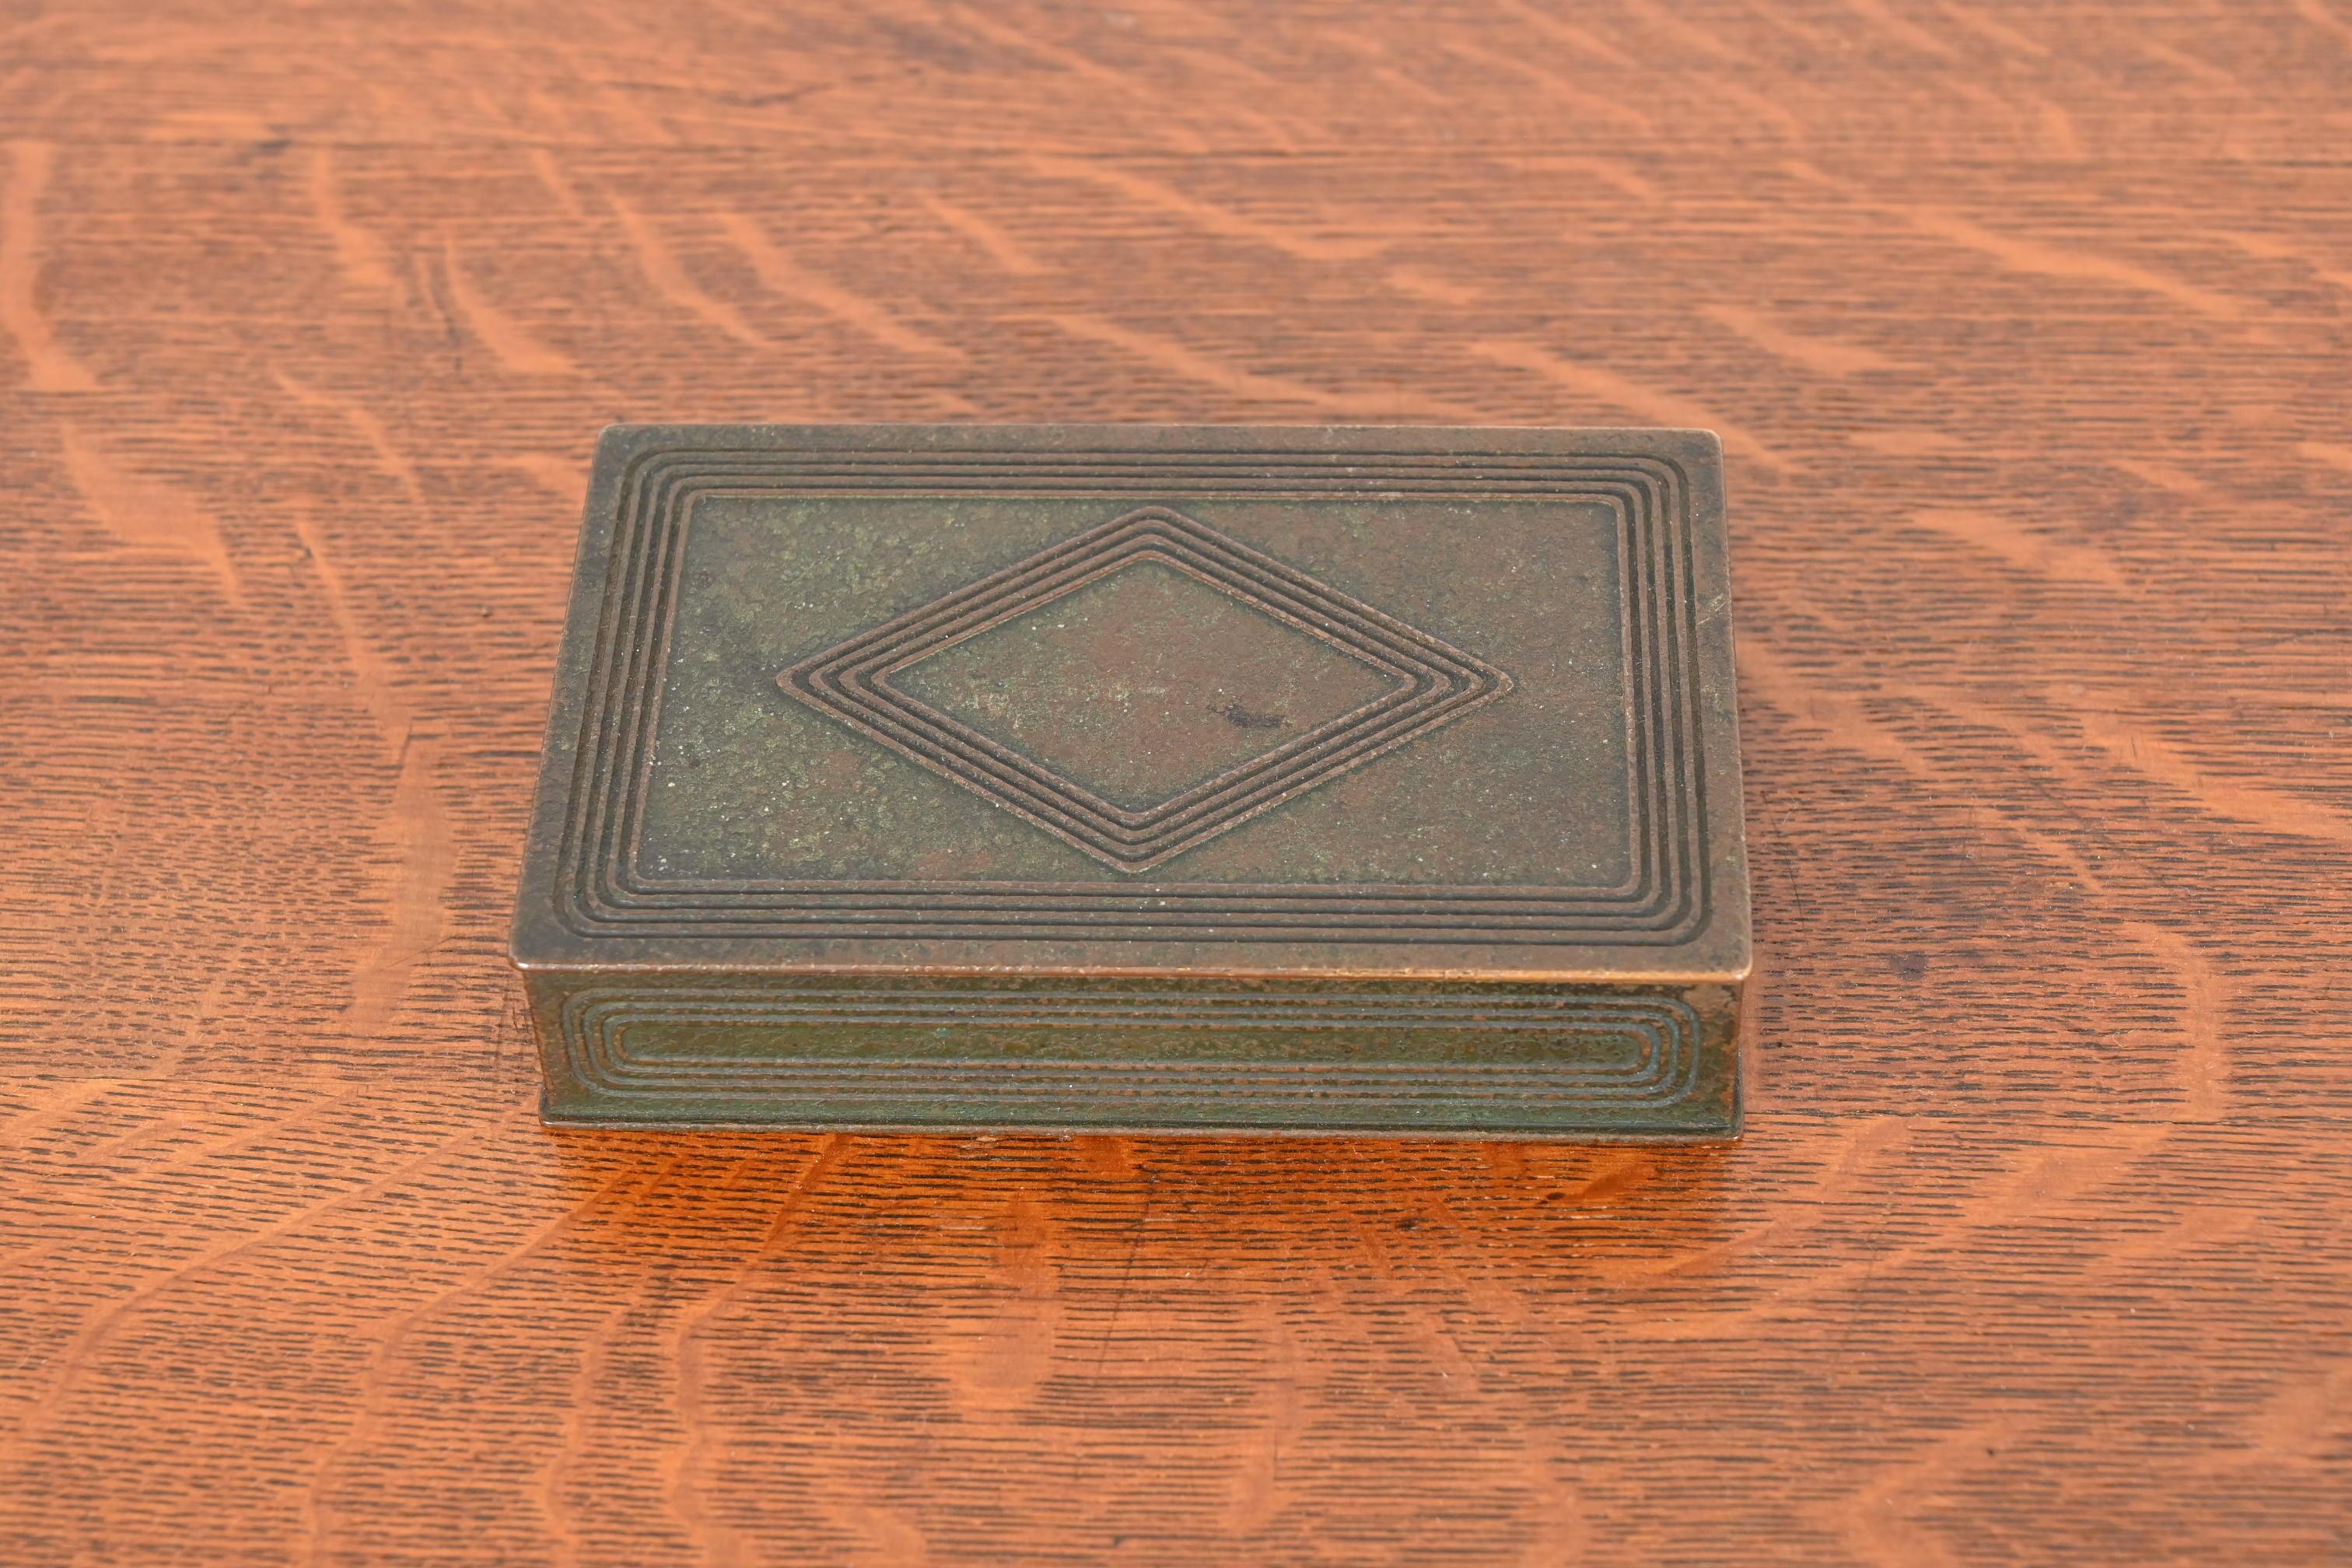 Eine wunderschöne antike Bronze Graduate Muster Schreibtisch-Box, Schmuck-Box, oder dekorative Box mit Grünspan grüner Patina

Von Tiffany Studios (signiert auf der Unterseite)

New York, USA, Anfang des 20. Jahrhunderts

Maße: 5,5 